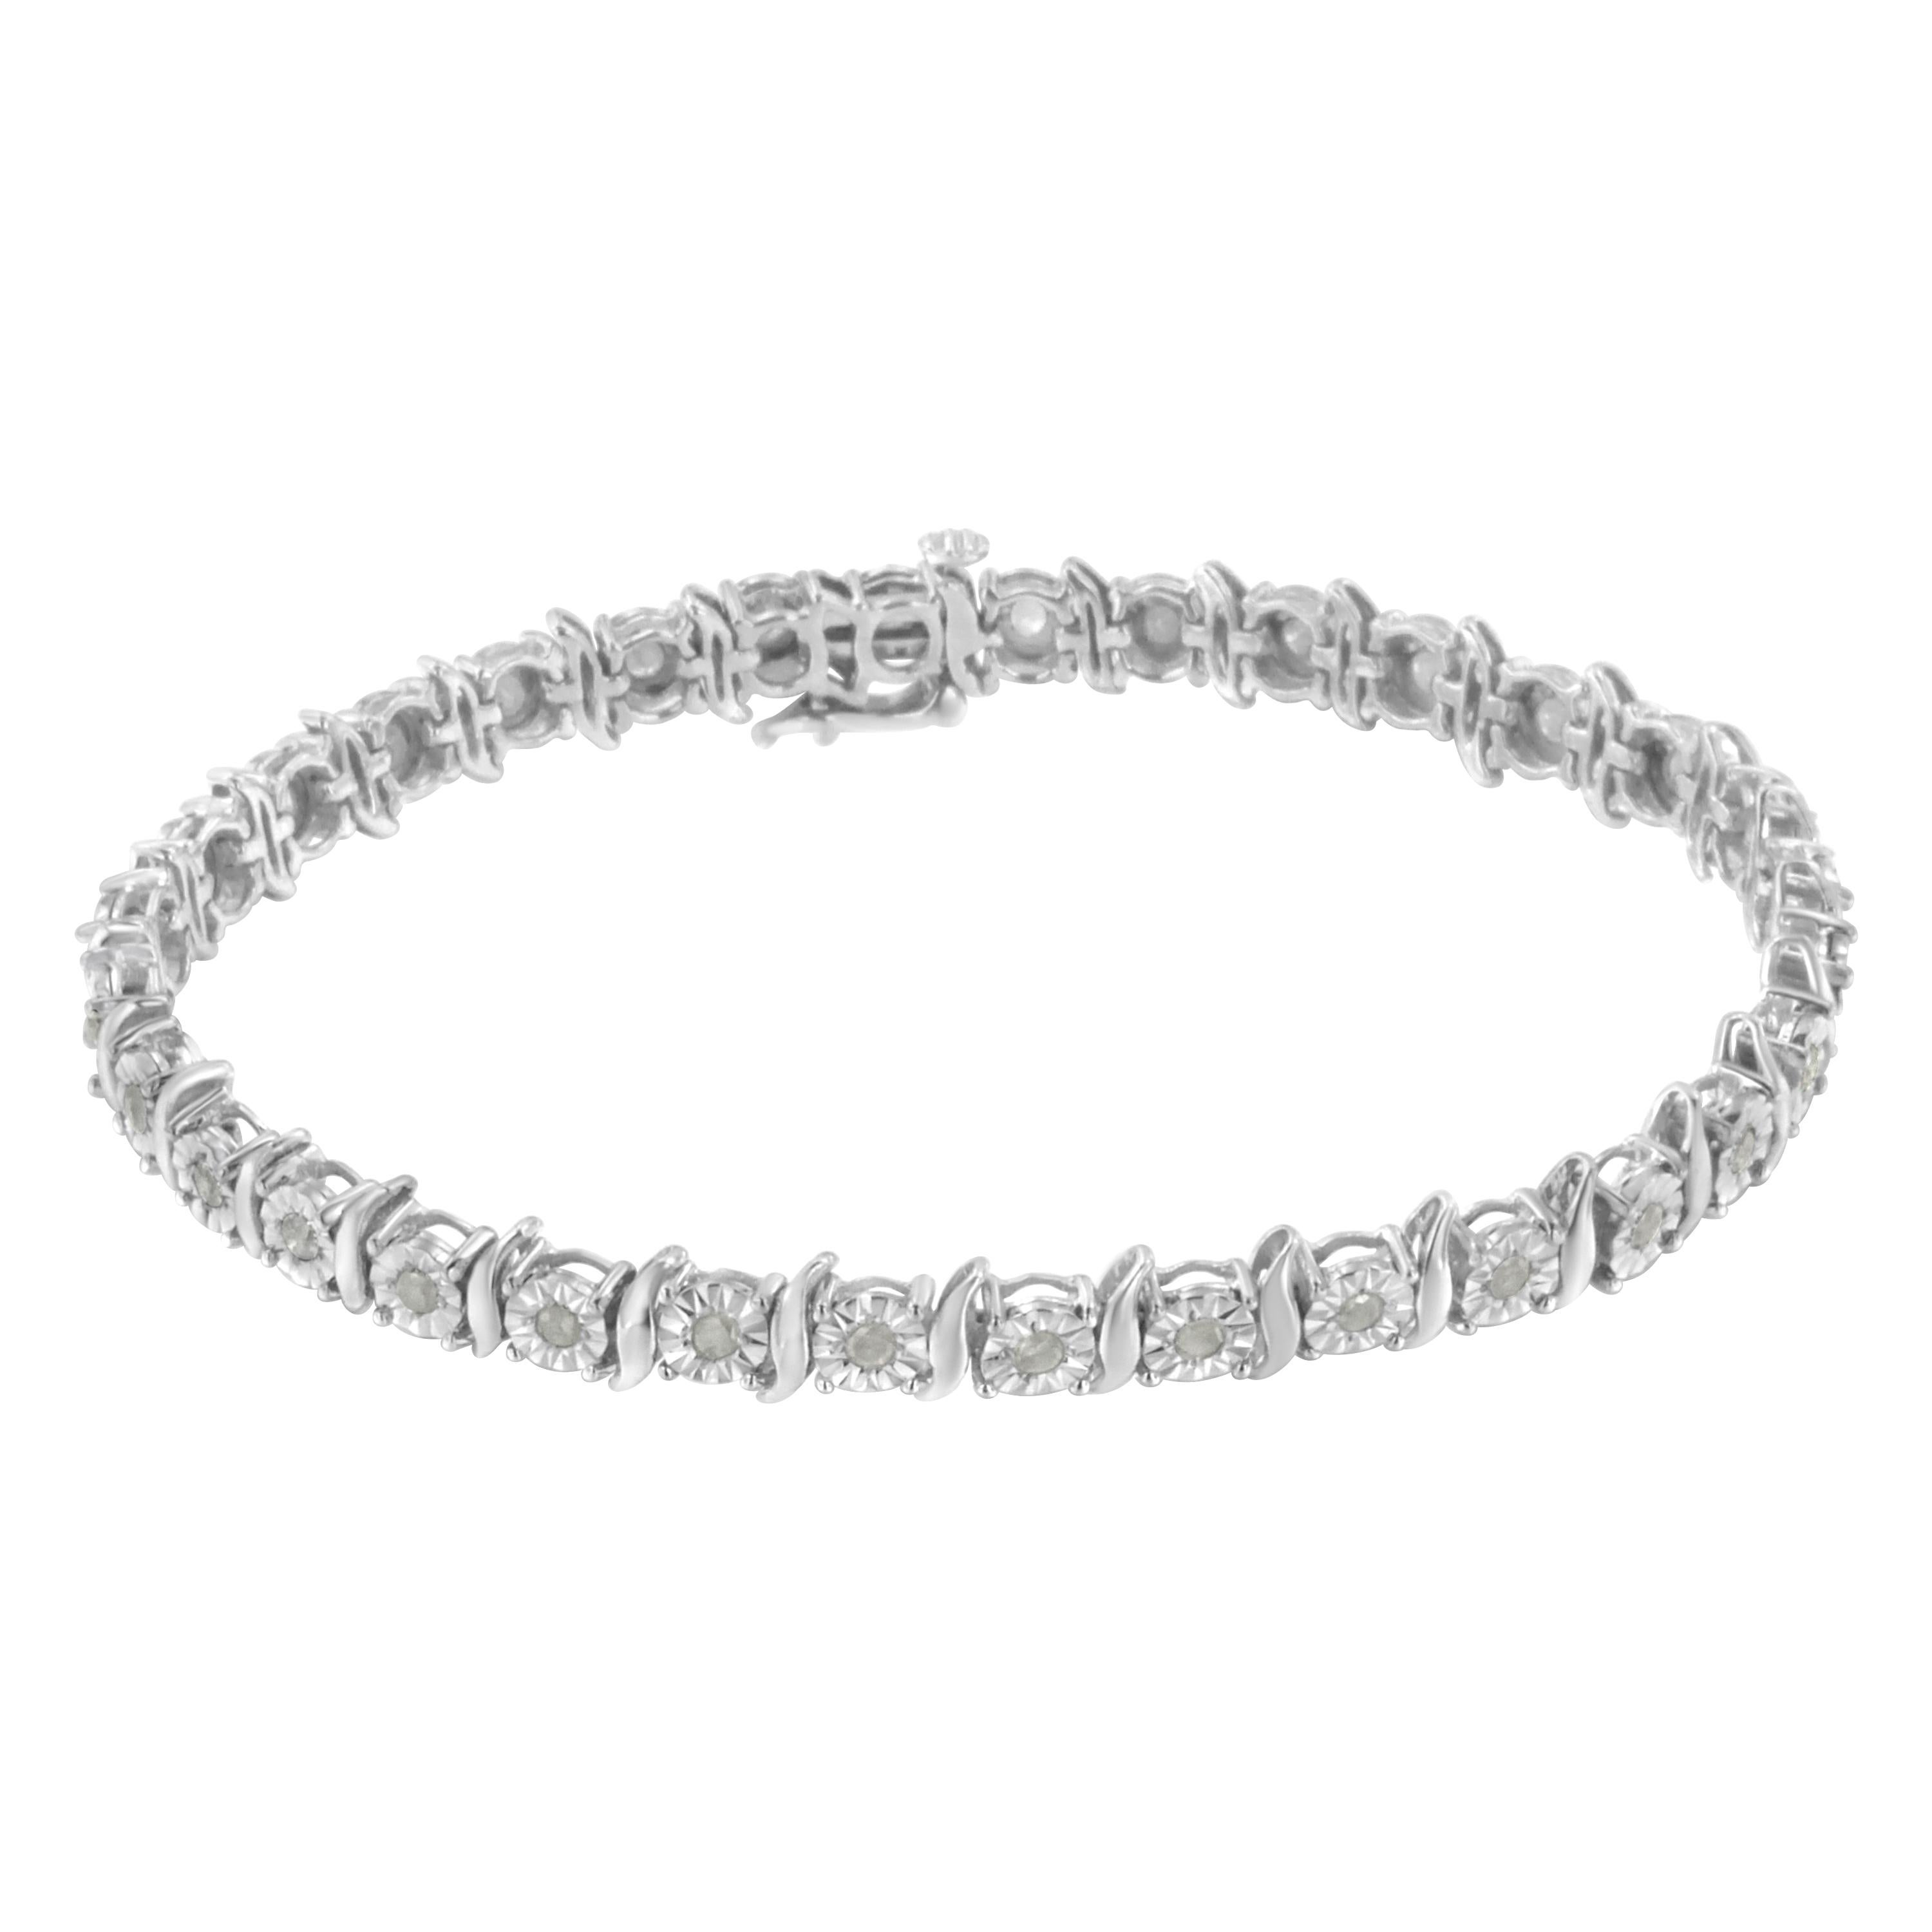 Feminin und doch glamourös, dieses Armband glänzt! Die geschwungenen Fassungen drehen sich spiralförmig um jeden schönen Diamanten im Rosenschliff und machen ihn zu einem einzigartigen und eleganten Geschenk, an das sie sich immer erinnern wird. Sie